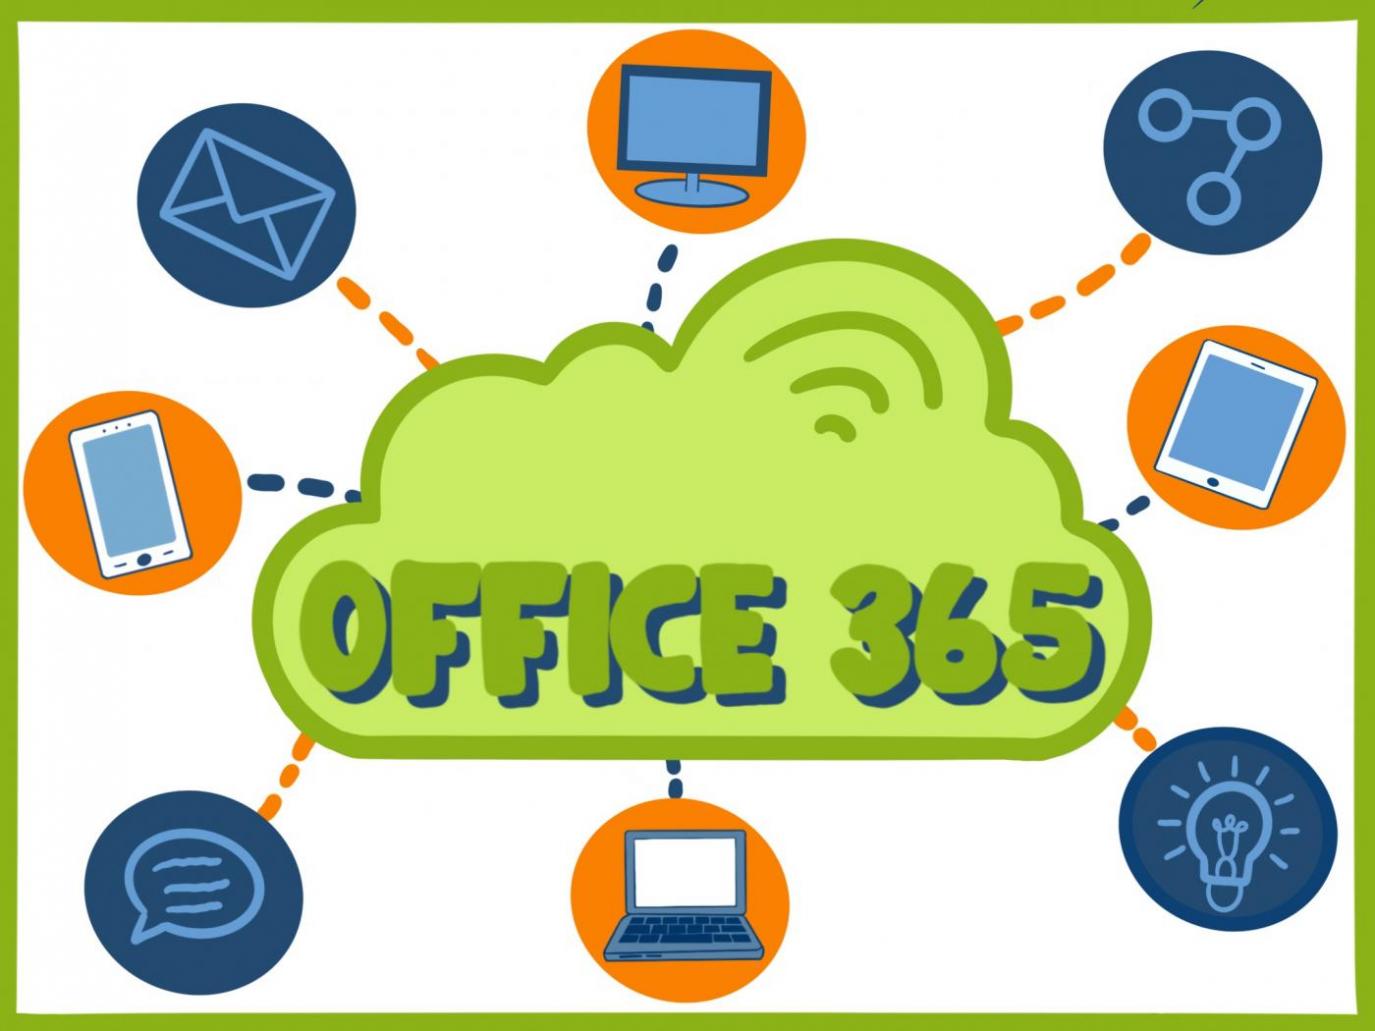 Eine grüne Wolke mit der Inschrift Office 365, davon ausgehend Linien die zu diversen weiteren Icons führen (Brief, Sprechblase, Smartphone, etc.)